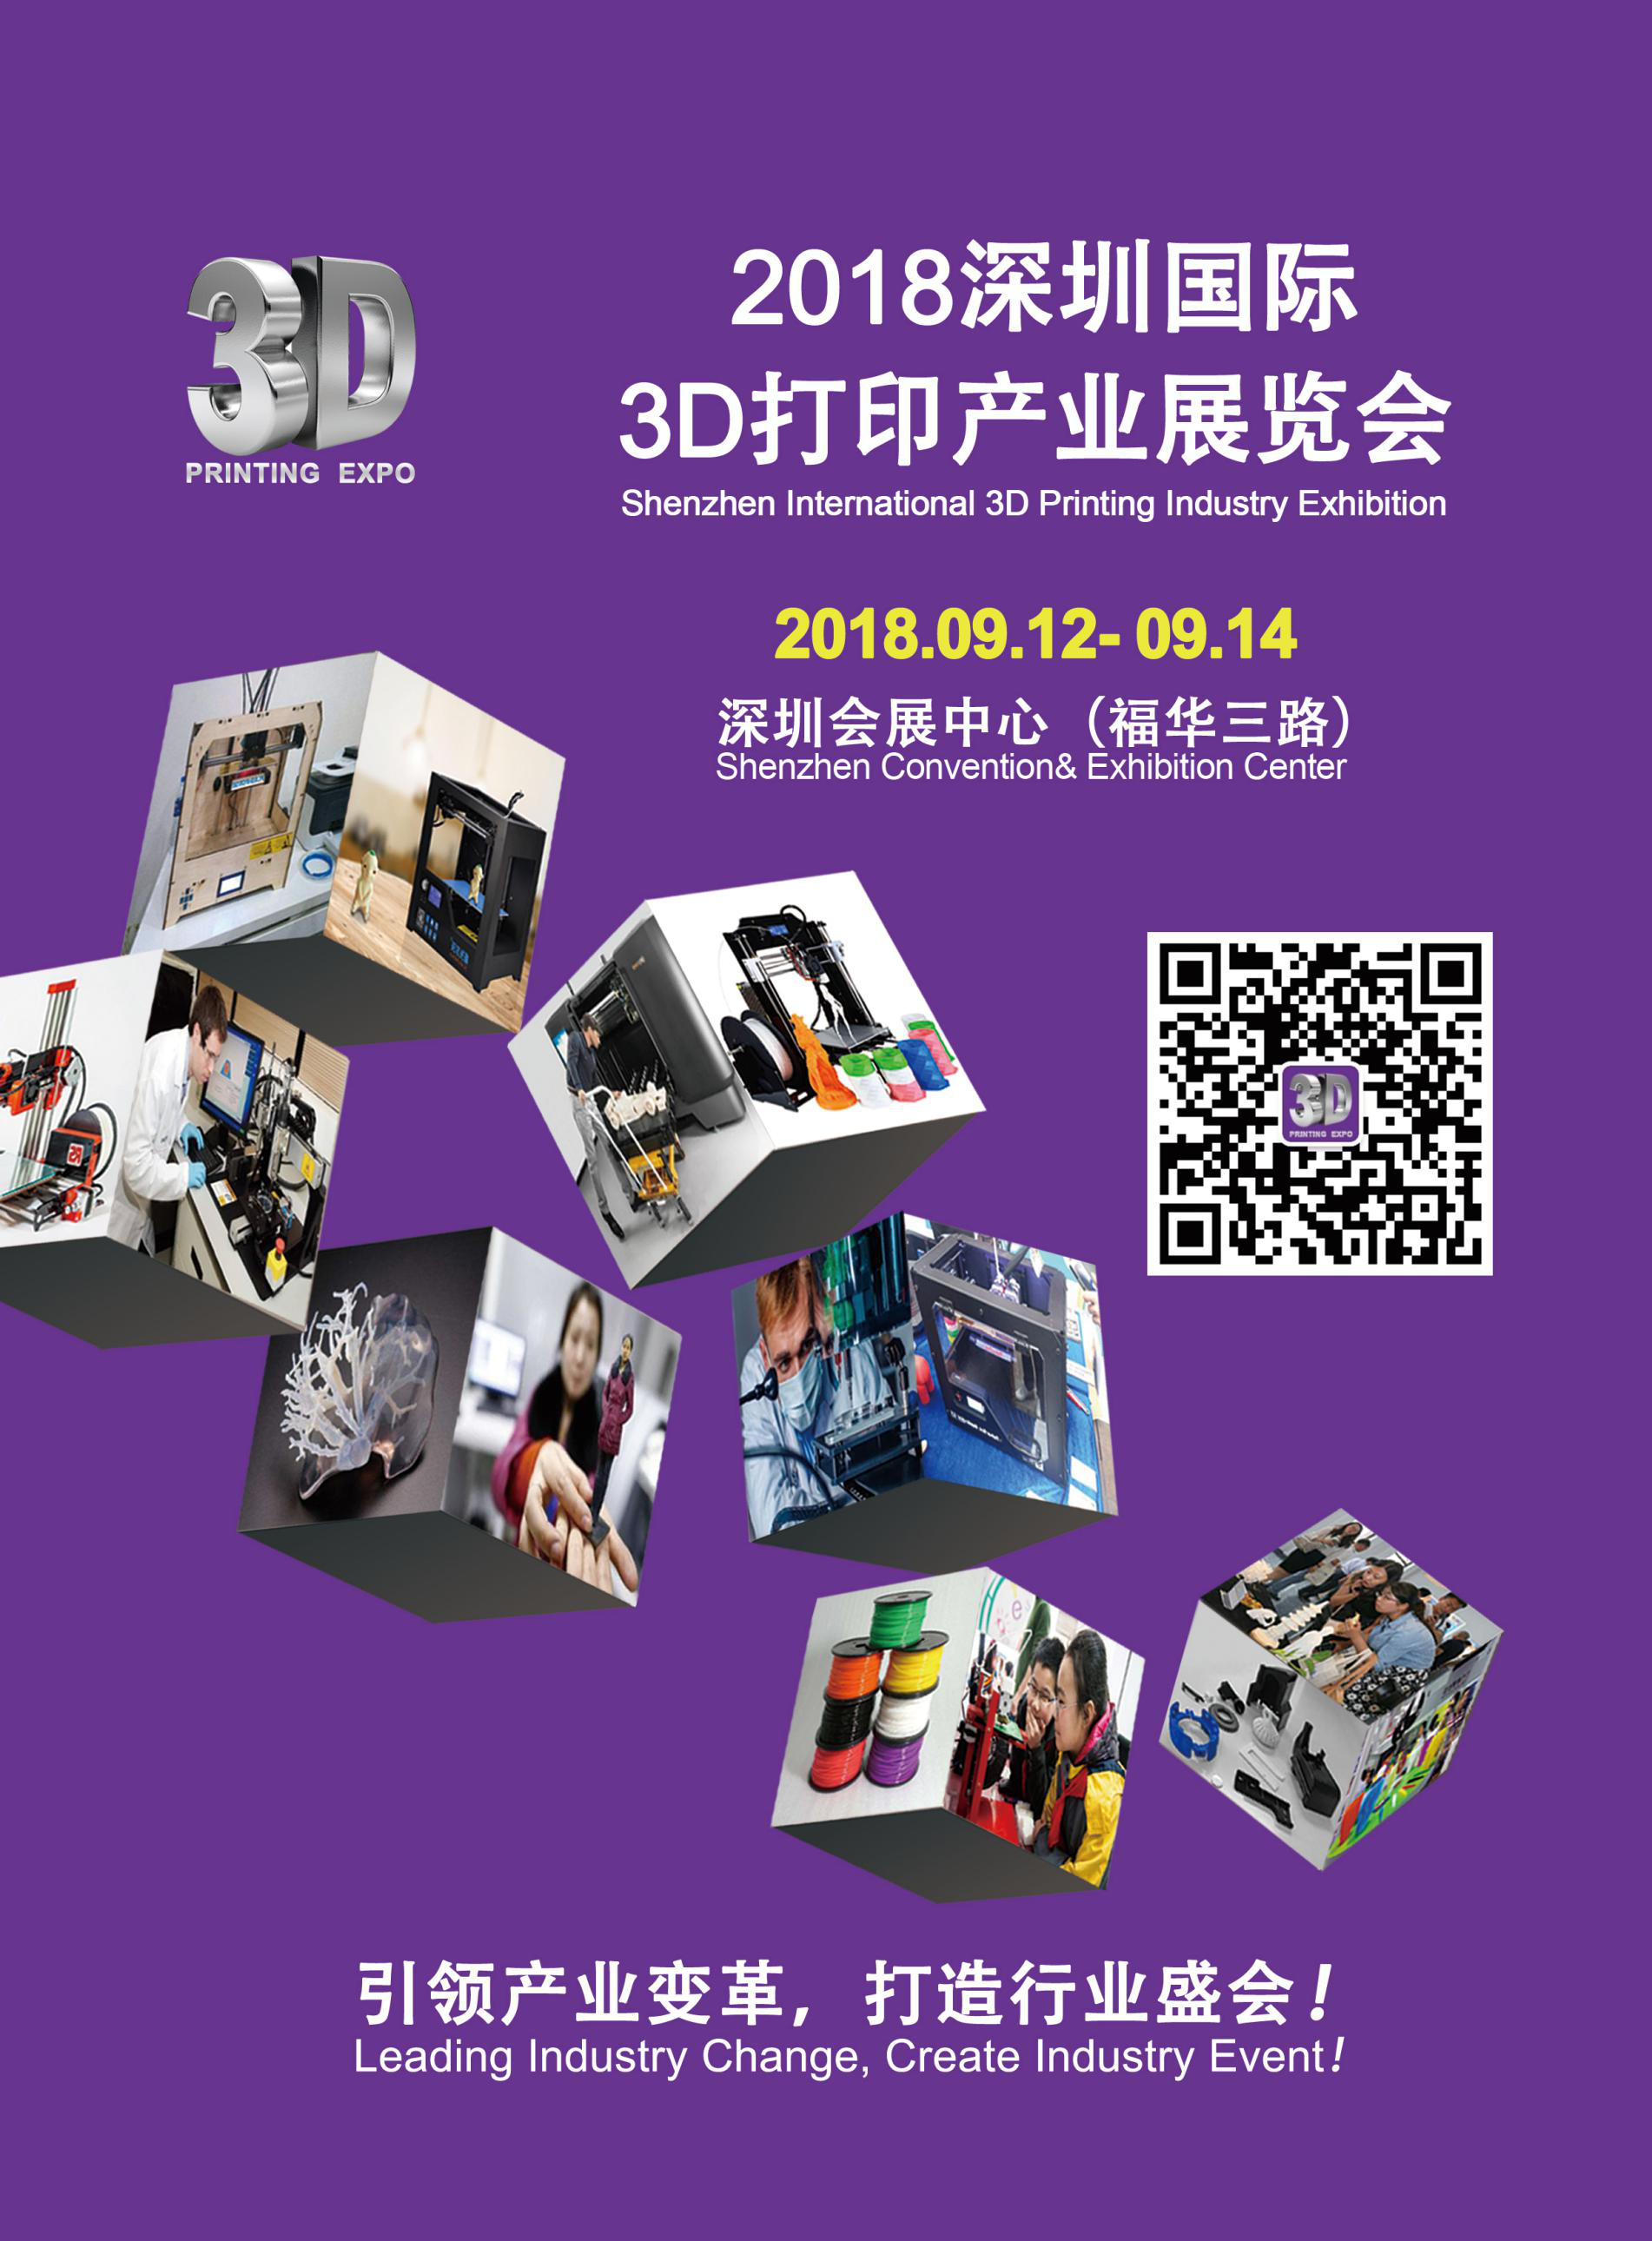 上海市2018深圳国际3D打印产业展览厂家2018深圳国际3D打印产业展览会